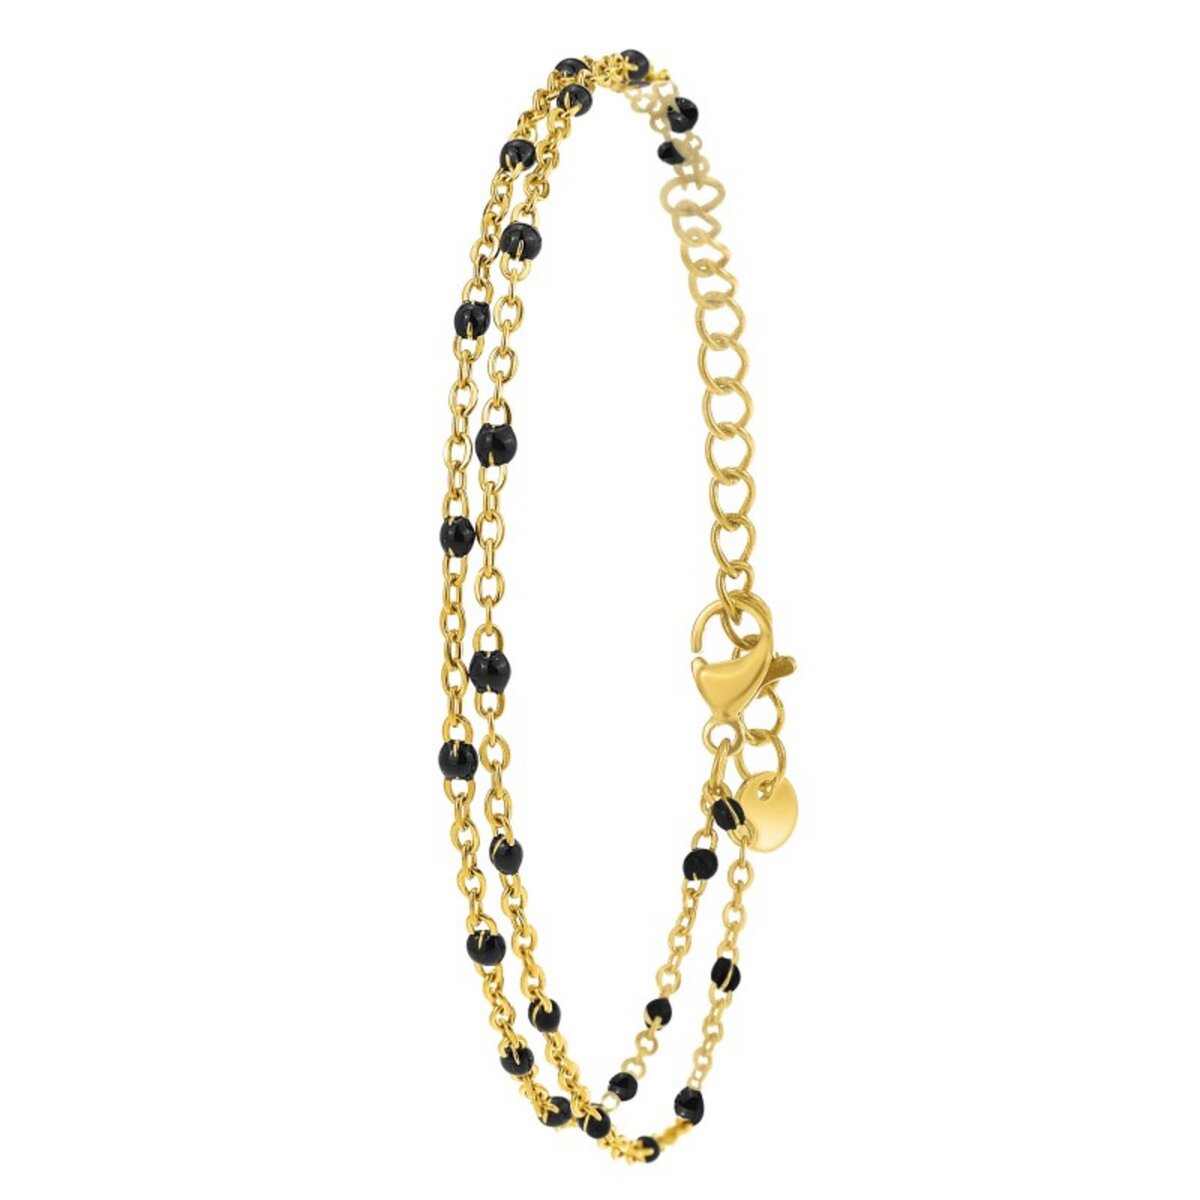  Bracelet double tour et perles noires par SC Bohème